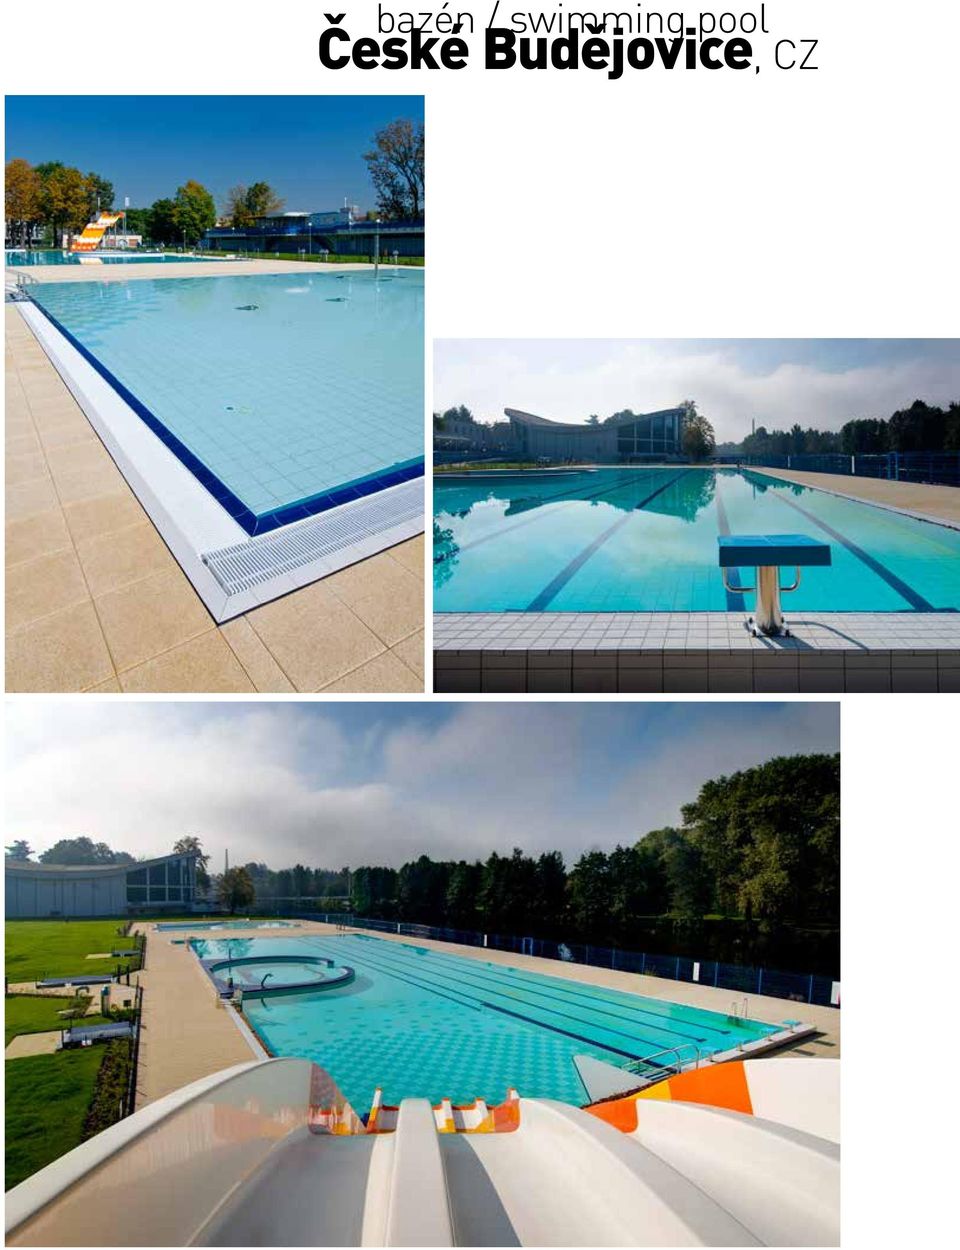 pool České